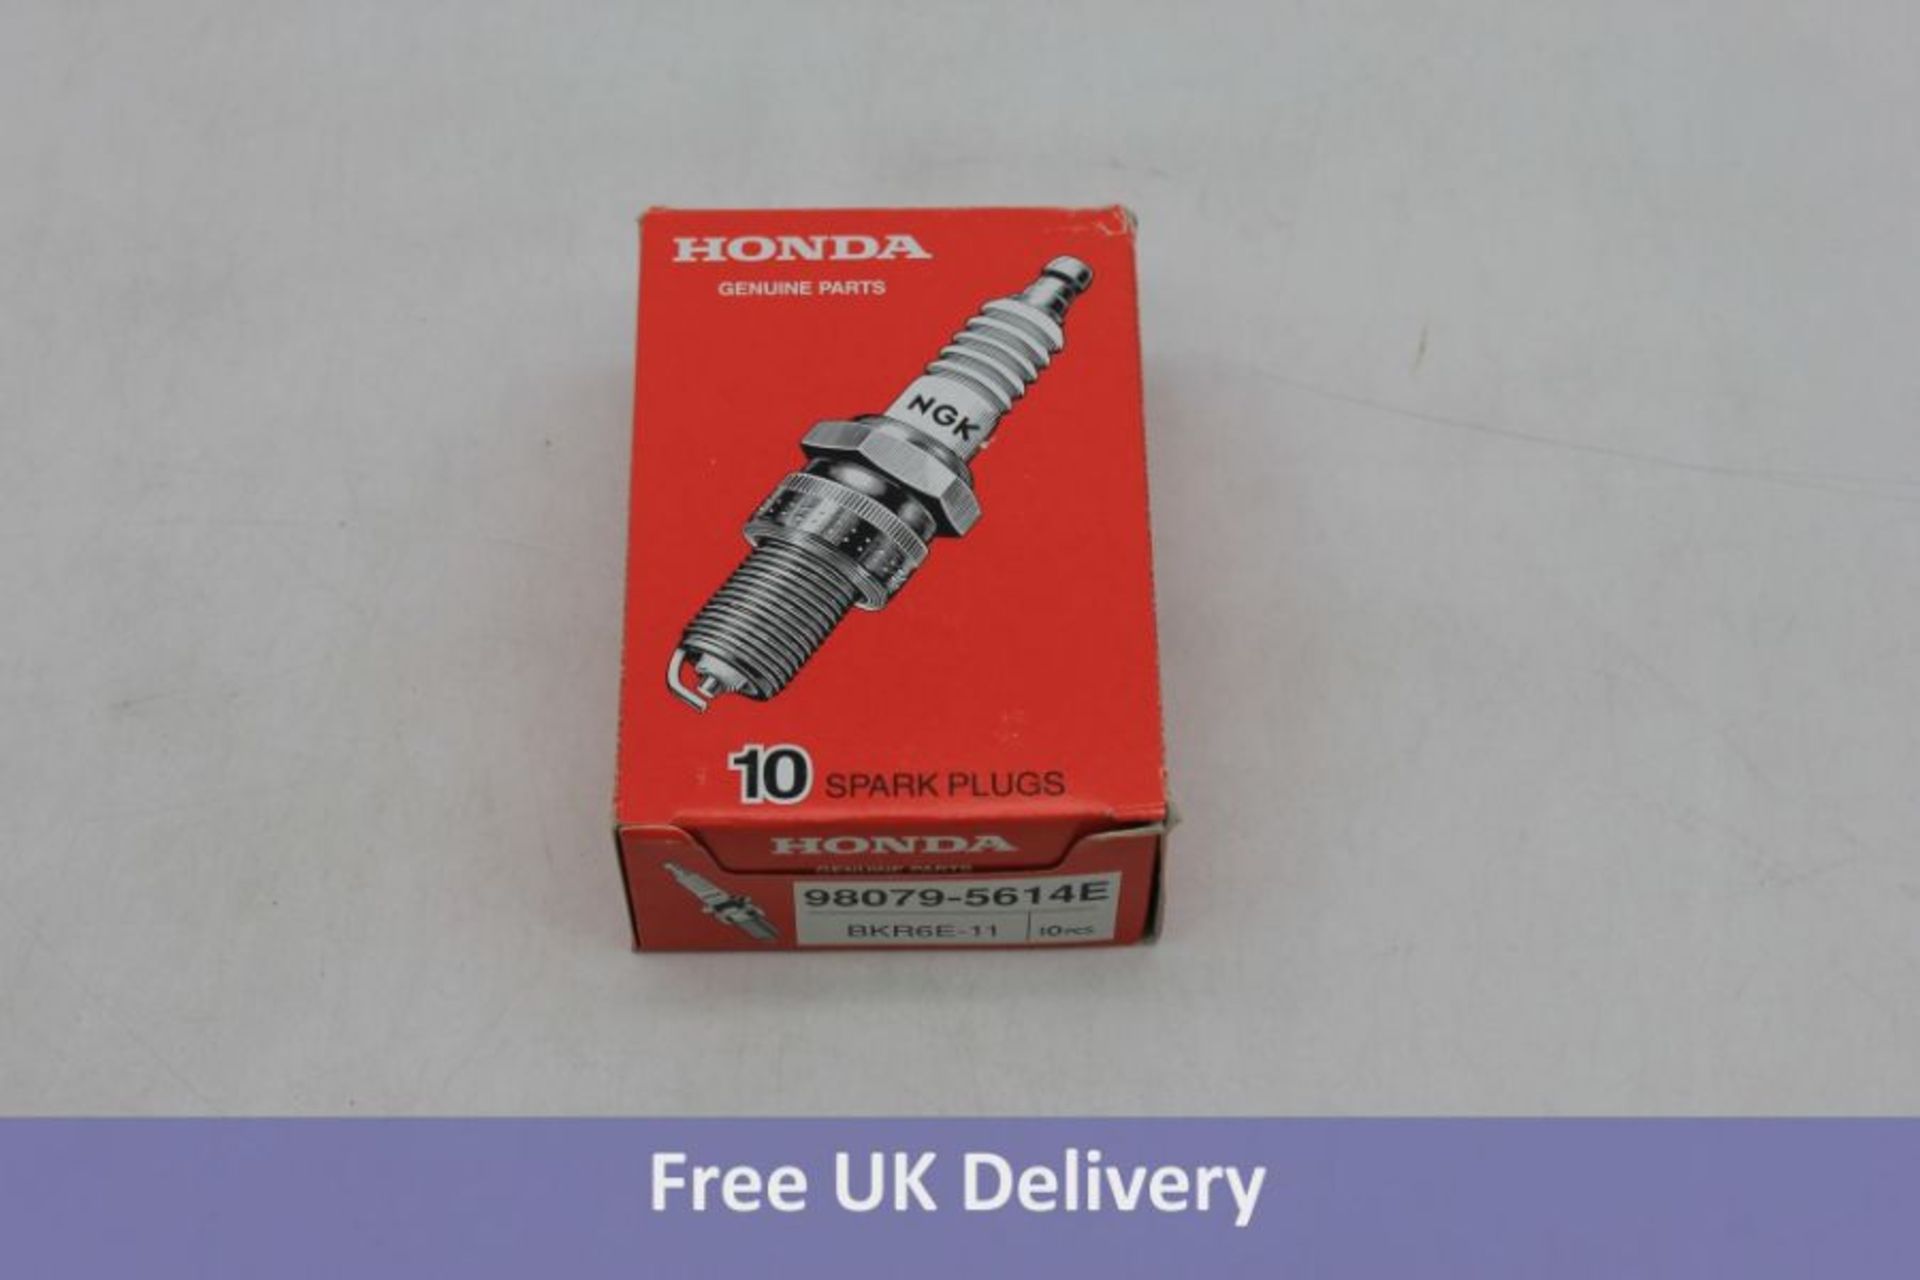 Two Packs of Honda Genuine Parts BKR6E-11 Spark Plug. 10 pieces per pack